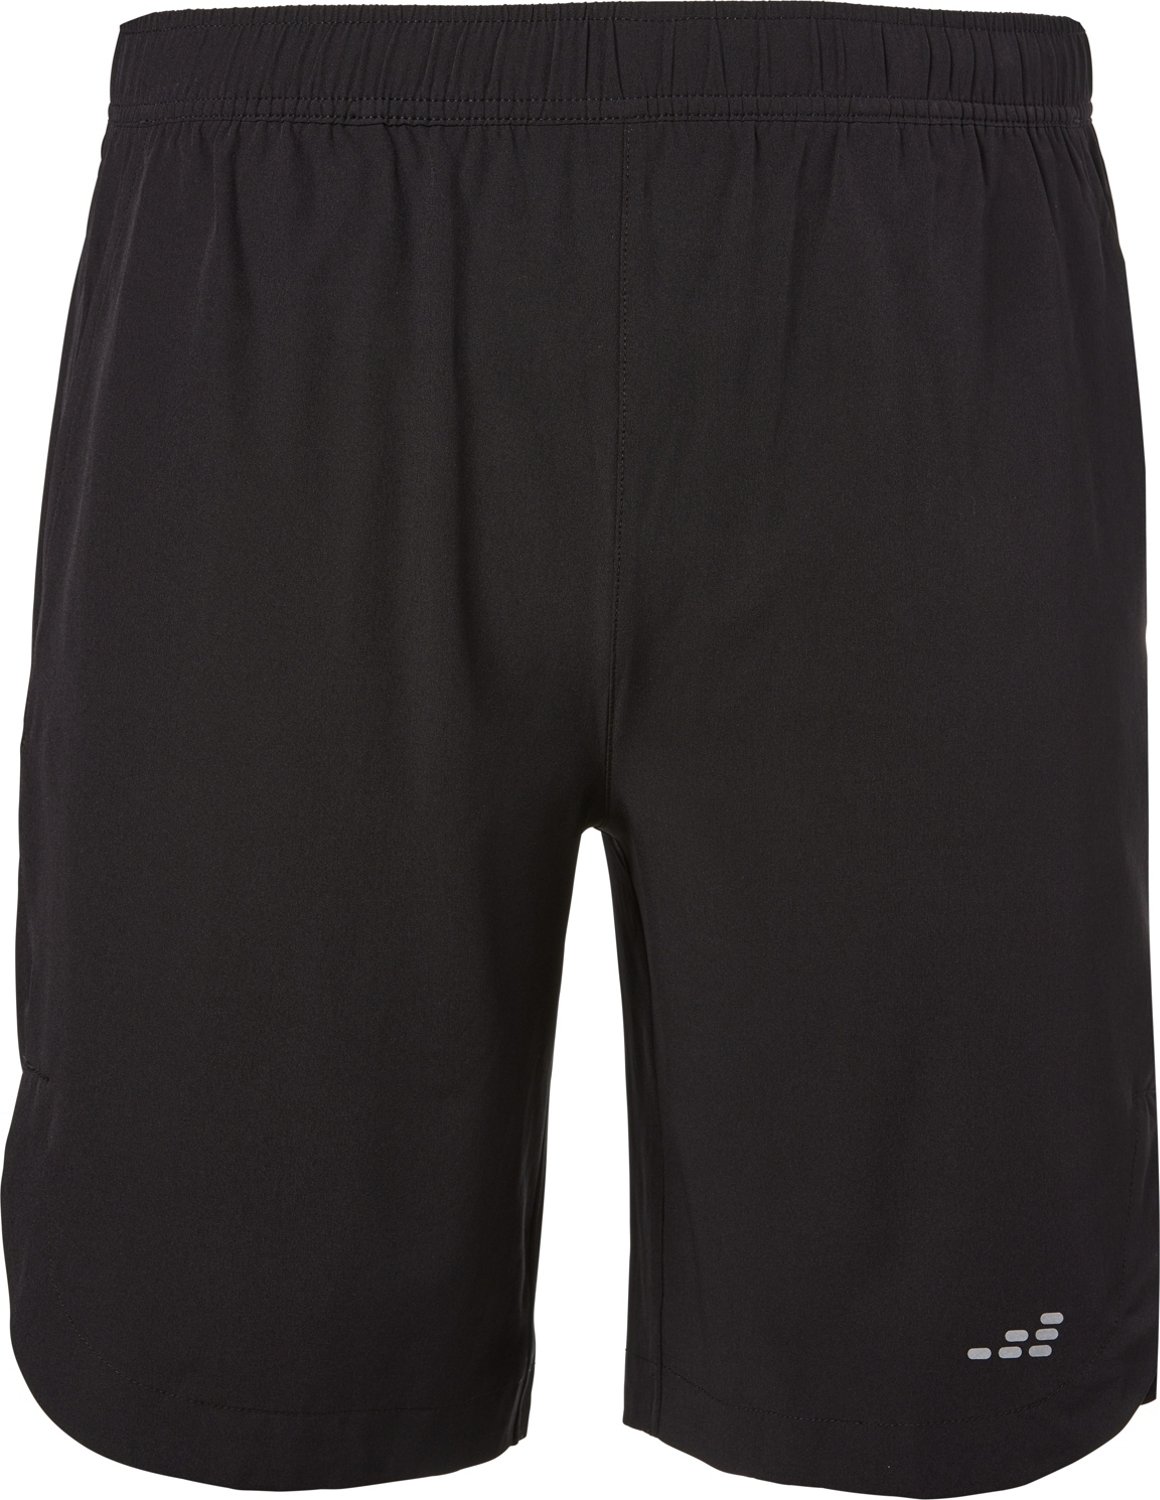 BCG Men's Dash 2-in-1 Shorts 9 in